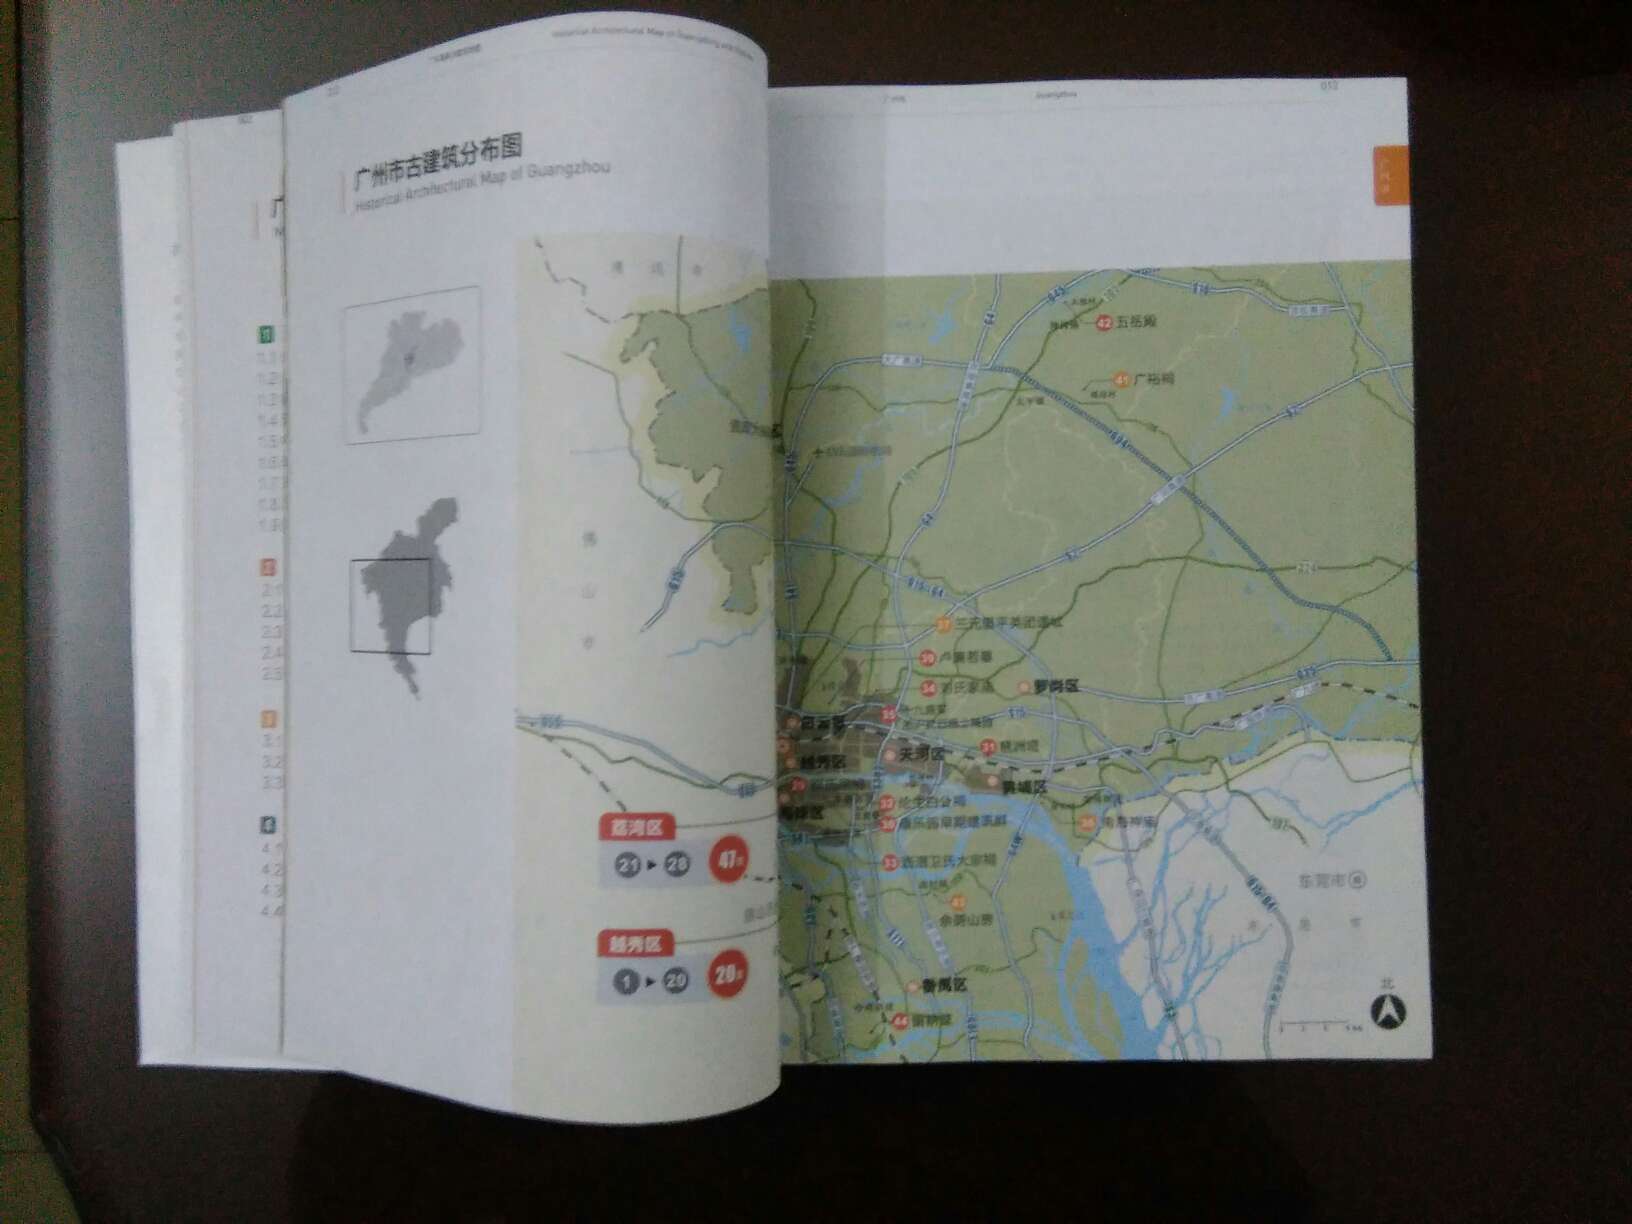 非常好的一本书，唯一的缺点是没有像北京古建筑地图一样加上地图